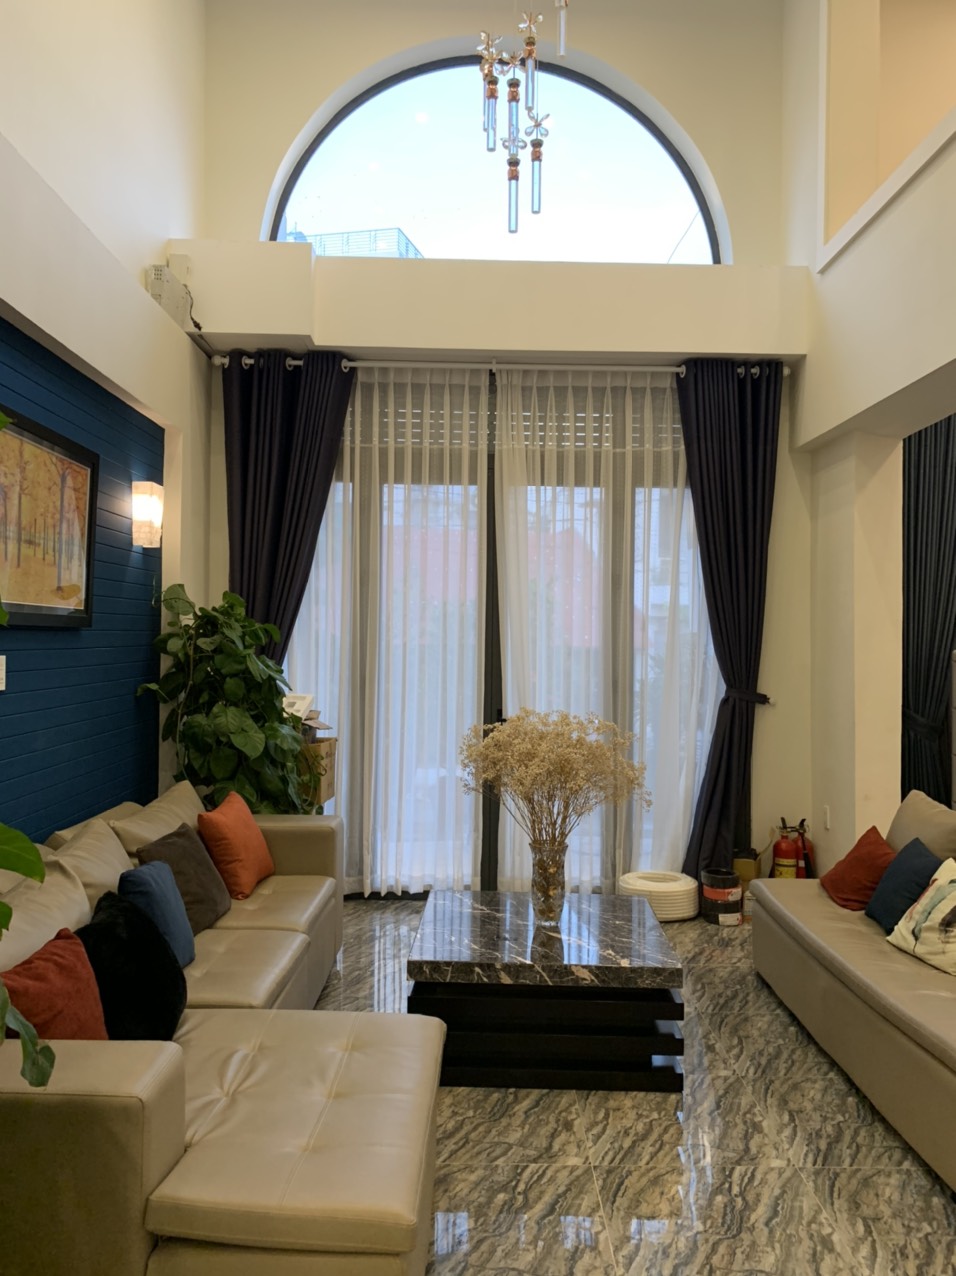 Bán nhà cho thuê căn hộ DV đường Nguyễn Khoái 6 tầng 51m2, Giá 7,2 tỷ